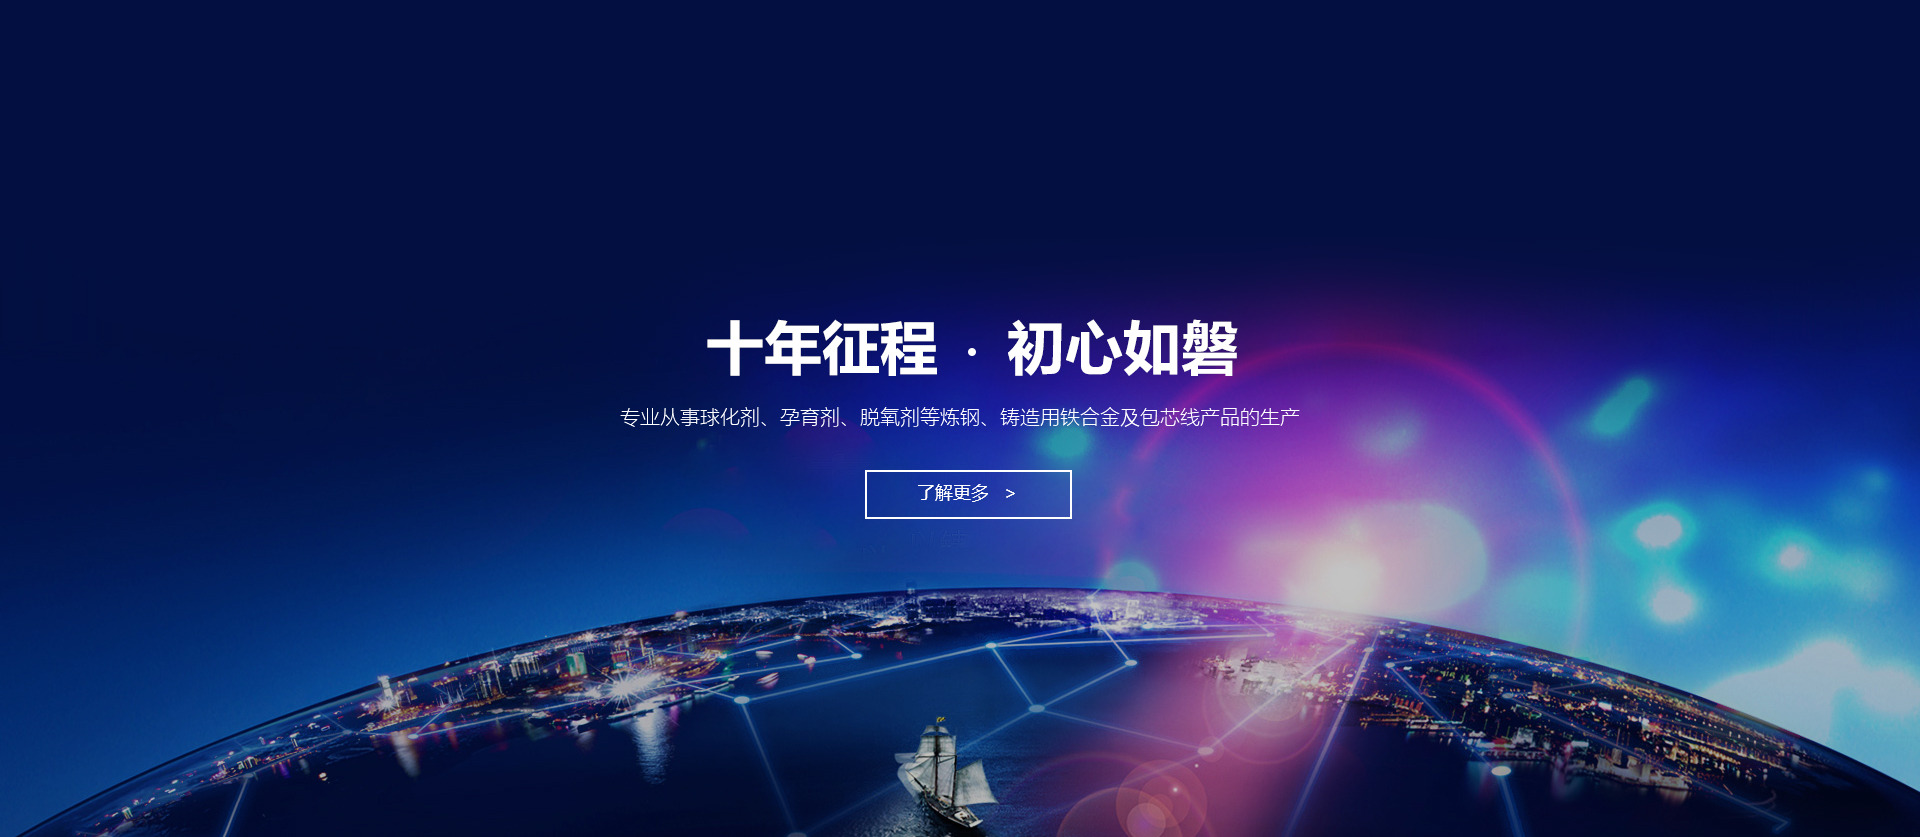 关于当前产品233330皇冠手机版·(中国)官方网站的成功案例等相关图片